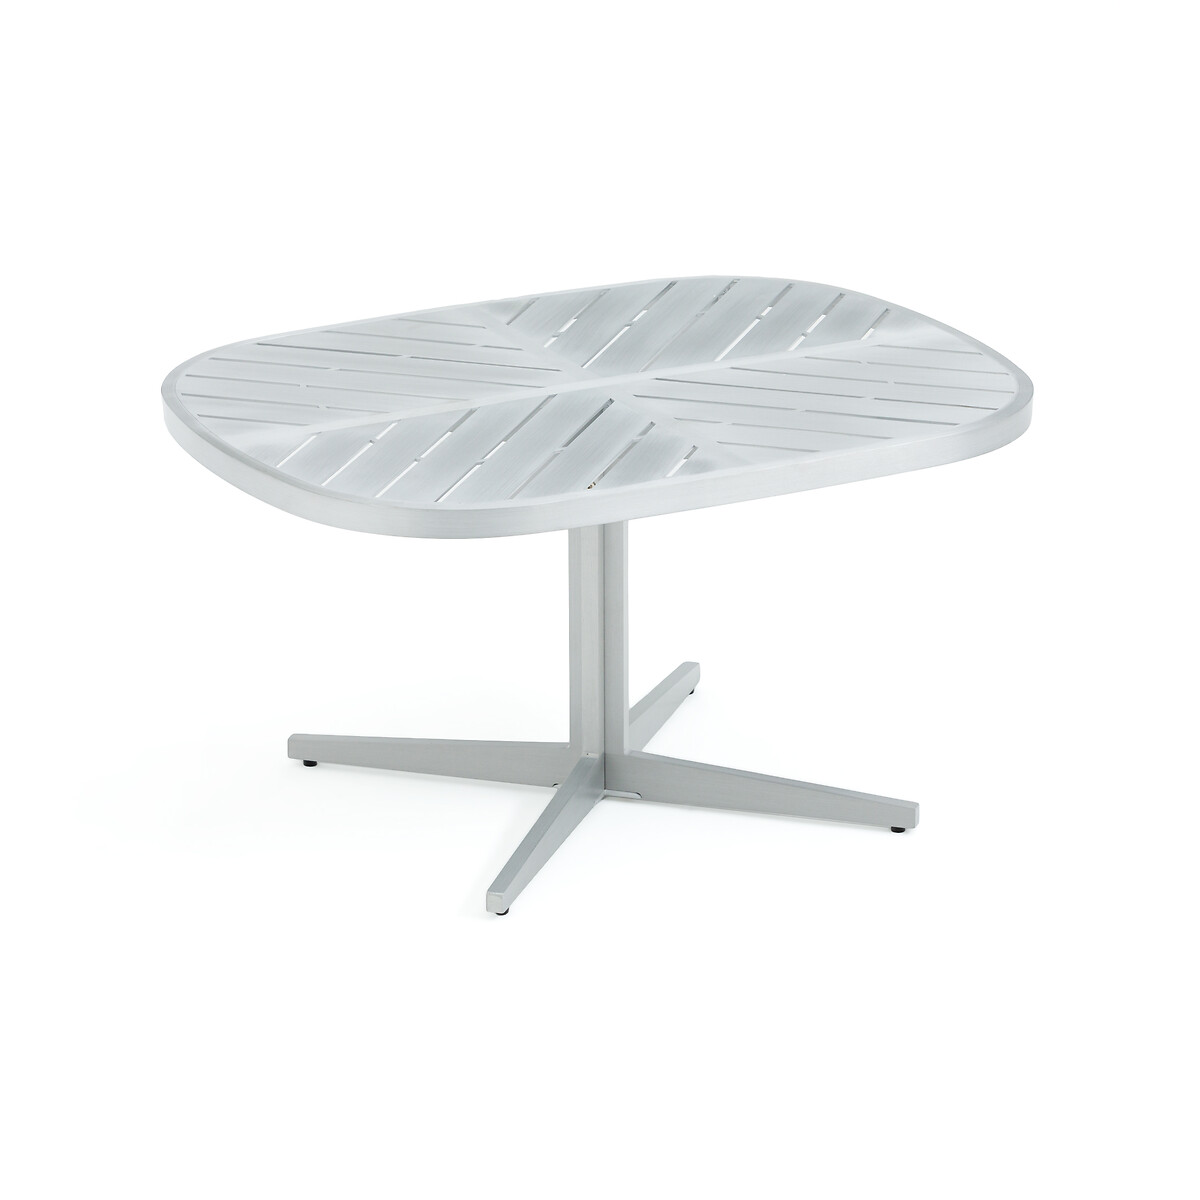 Стол журнальный для сада из алюминия Kotanne единый размер серый стол laredoute журнальный прямоугольный из металла strobile единый размер серый